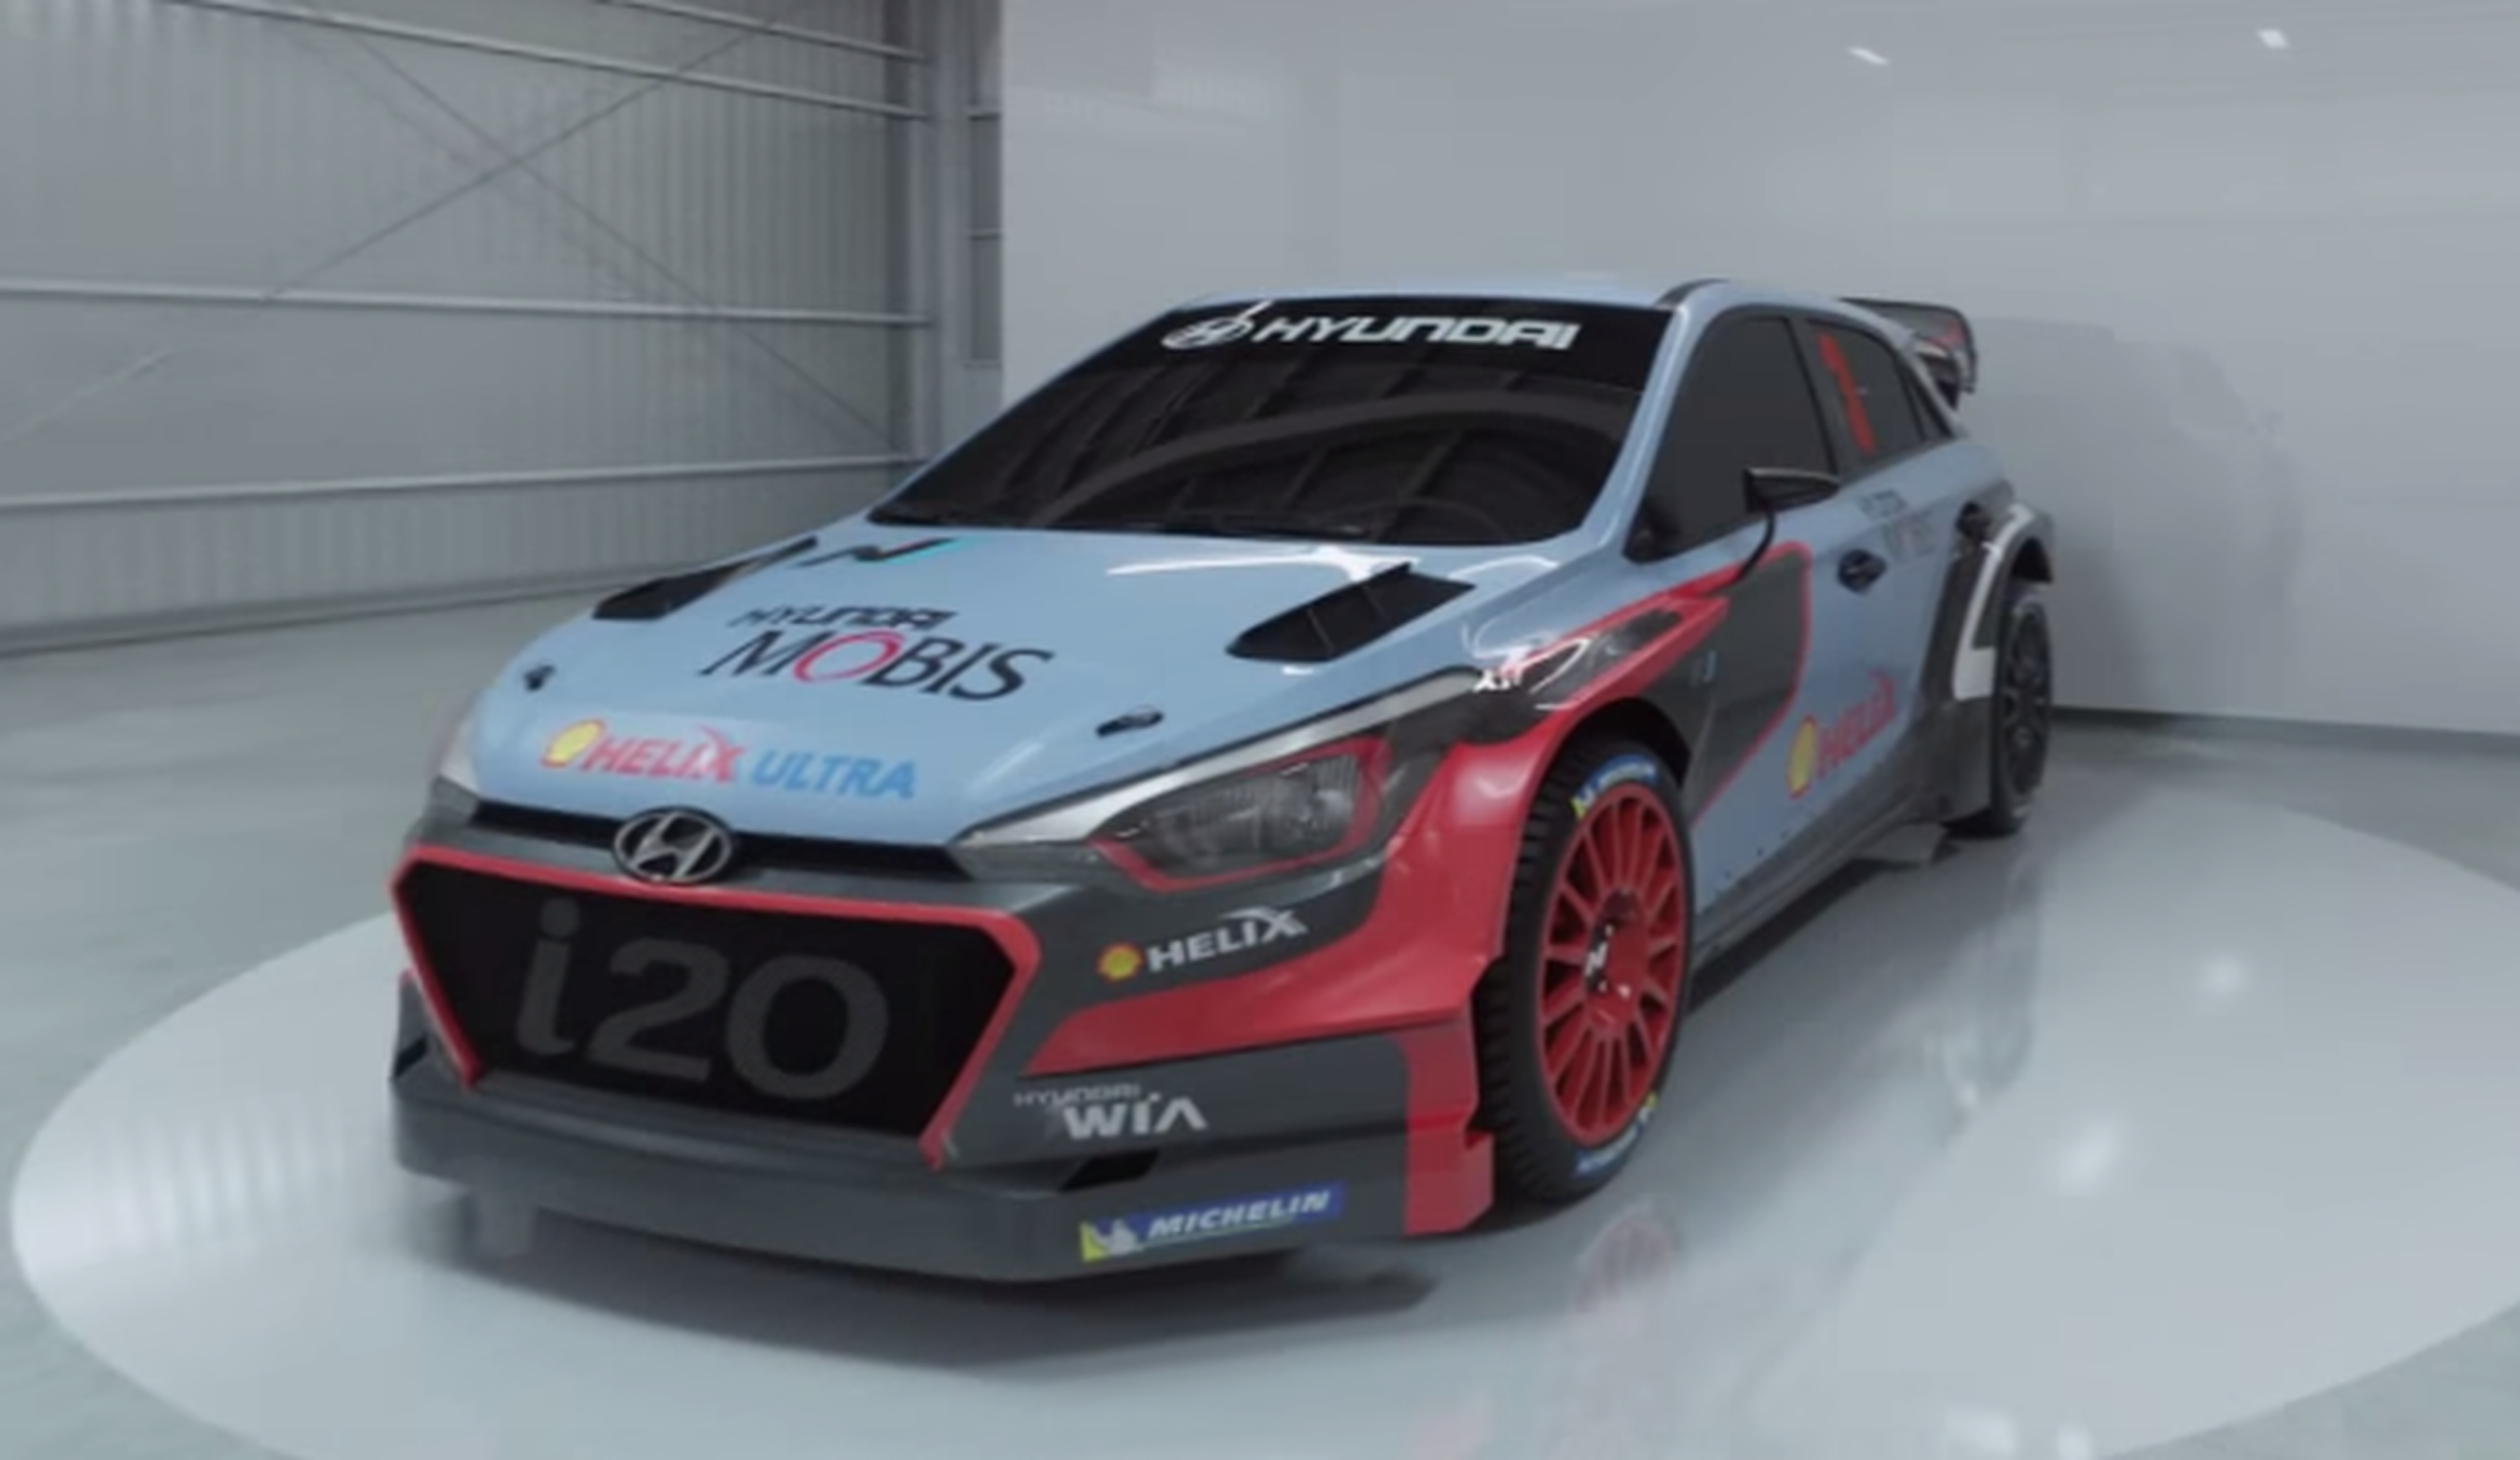 VÍDEO: ¿Cómo convertir el Hyundai i20 en WRC? Aquí va, ¡qué guapo!